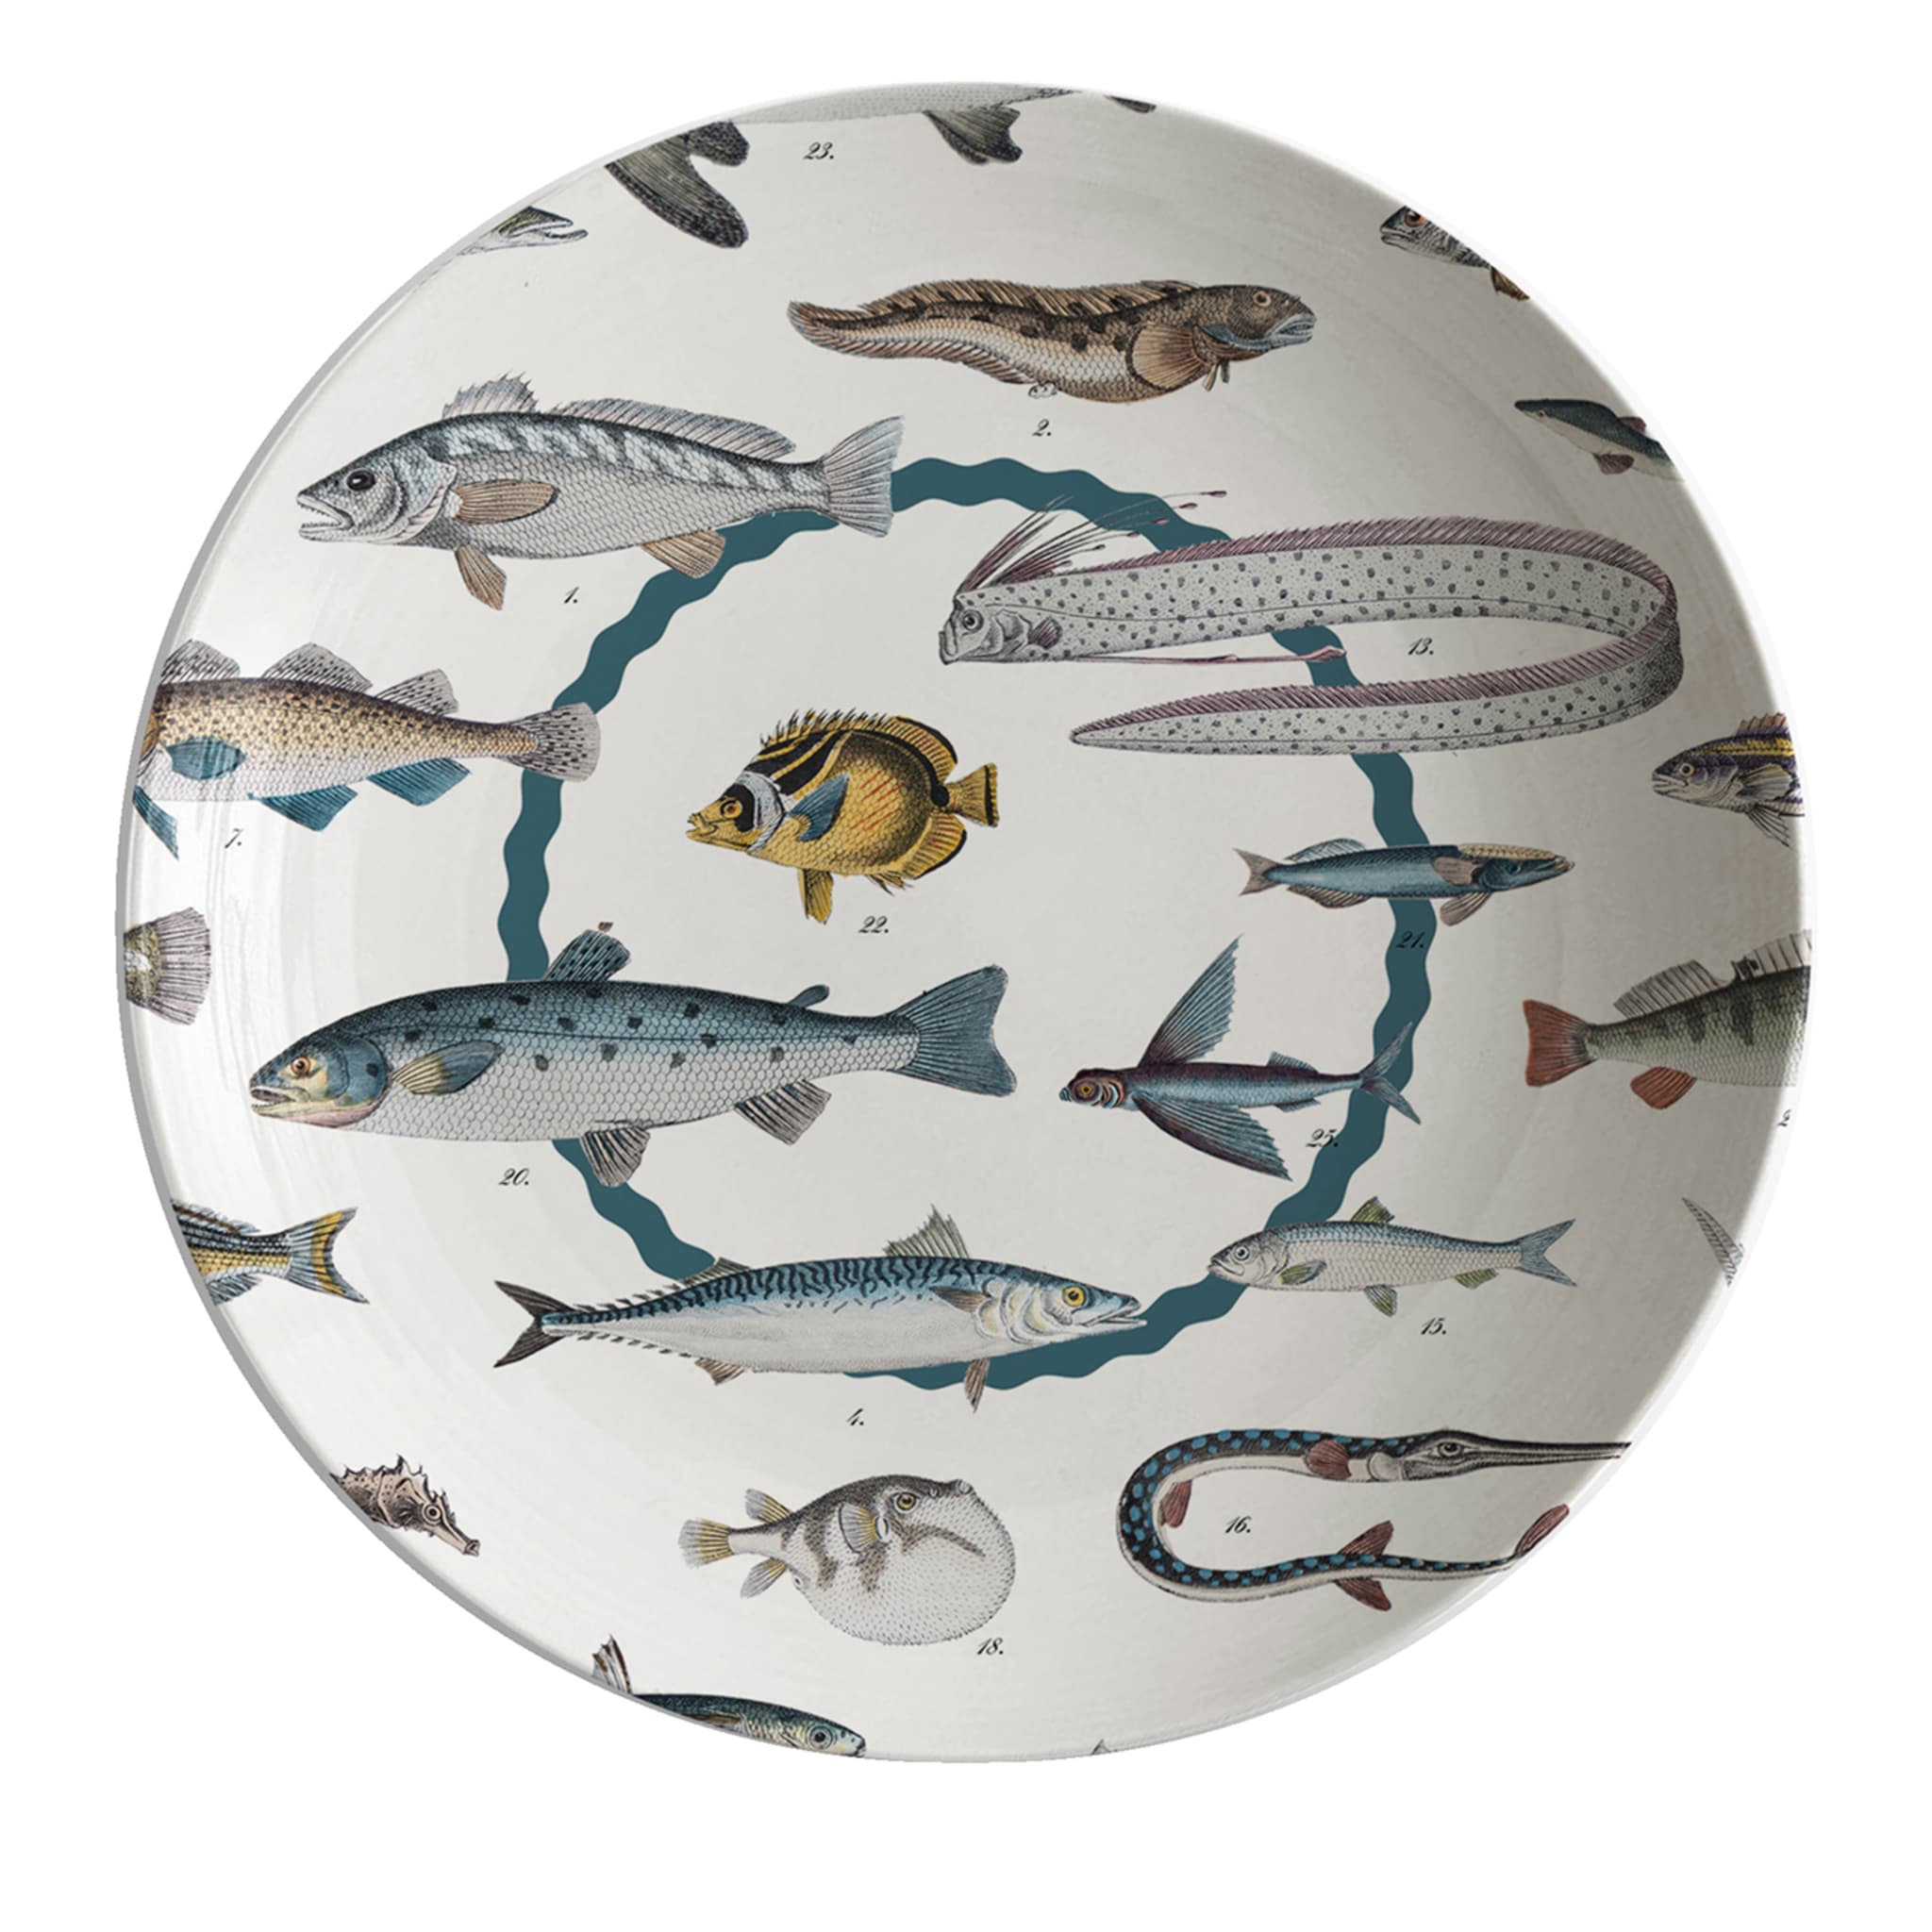 Cabinet De Curiosités Porcelain Soup Plate With Fishes - Main view